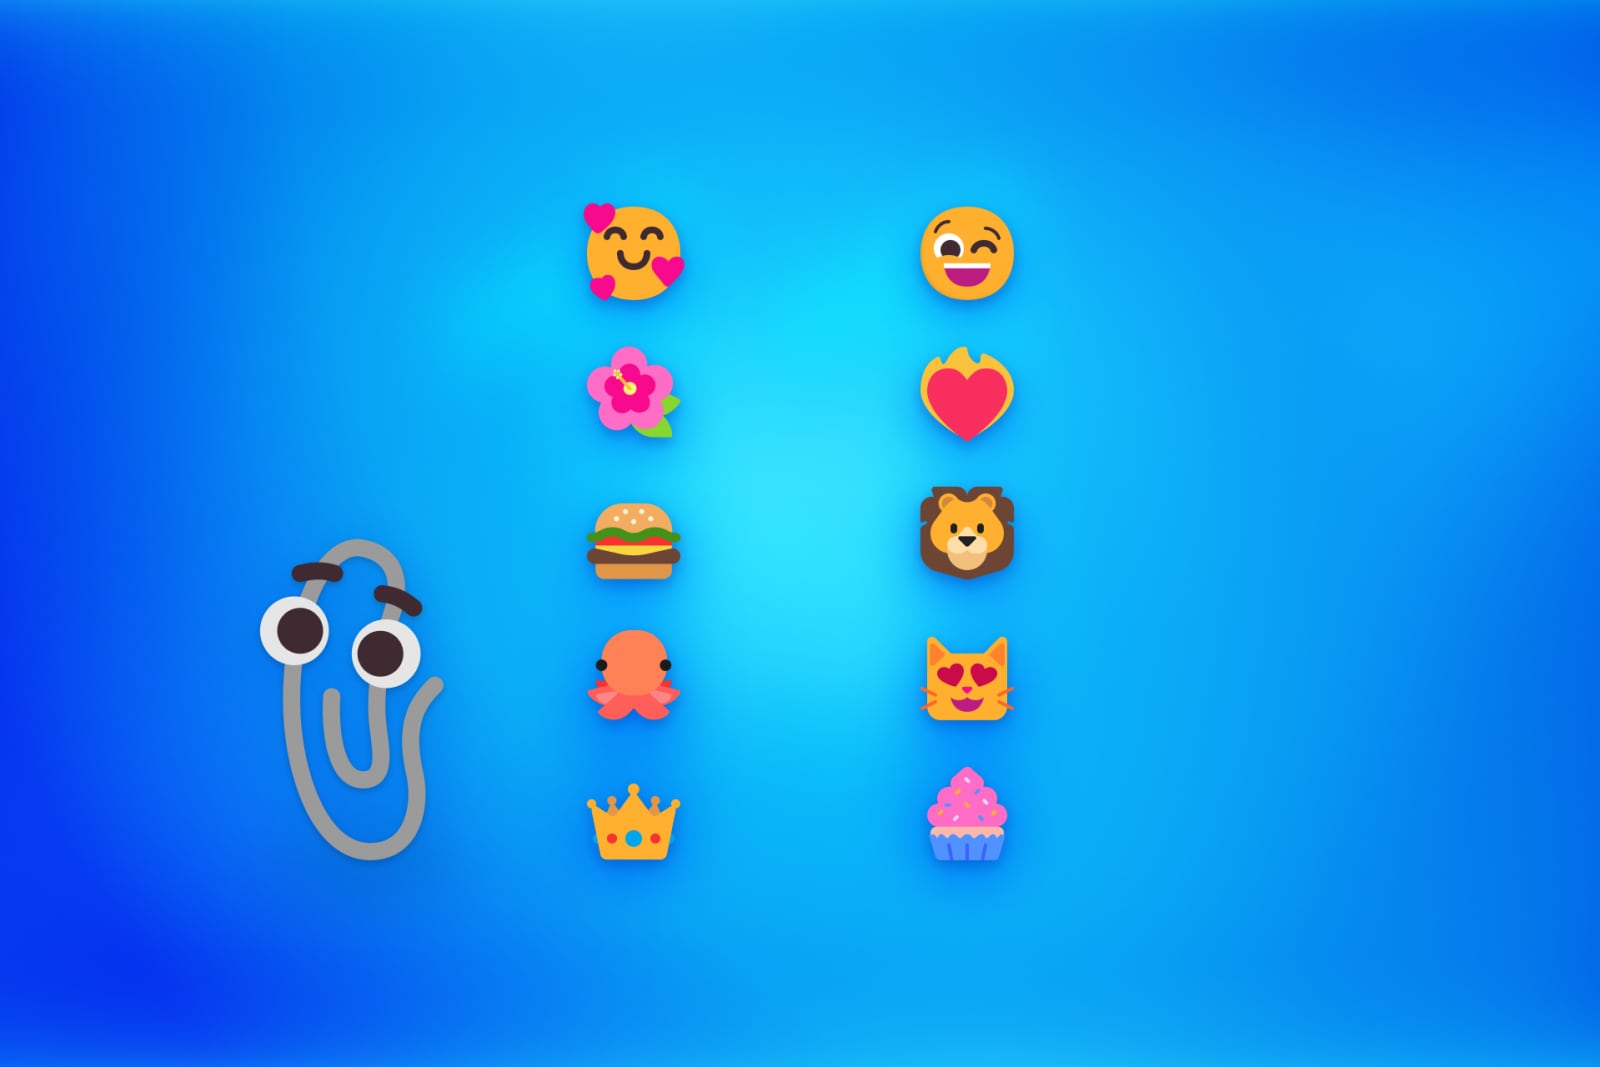 微软发布 Windows 11 新版 Fluent Emoji 采用 2D 扁平风格